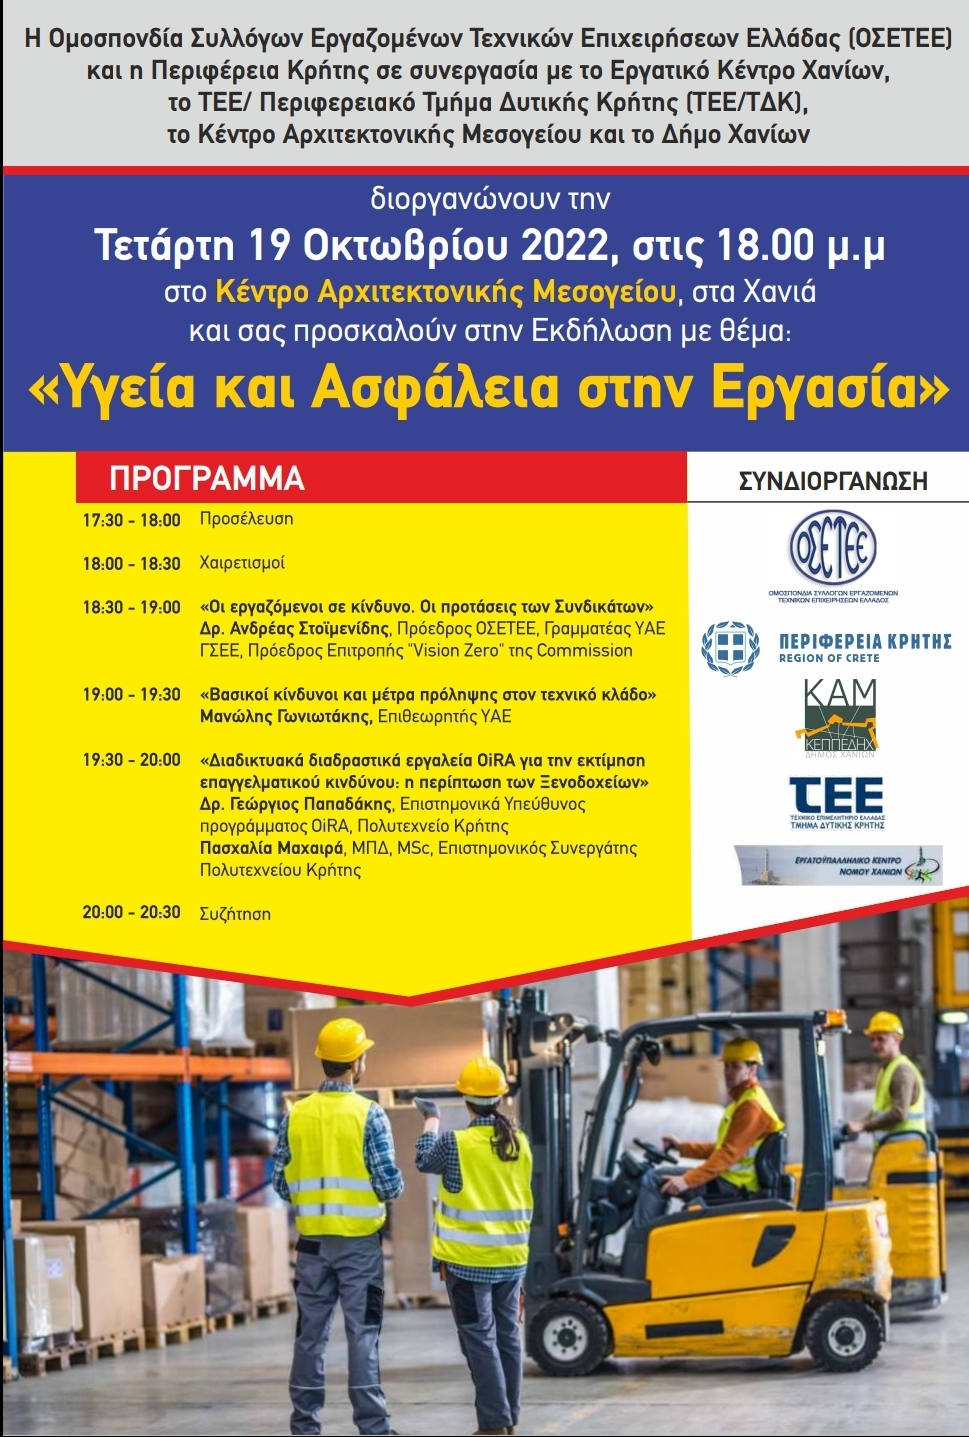 Ενημερωτική εκδήλωση για την «Υγεία και την Ασφάλεια στην Εργασία» με την στήριξη της Περιφέρειας Κρήτης